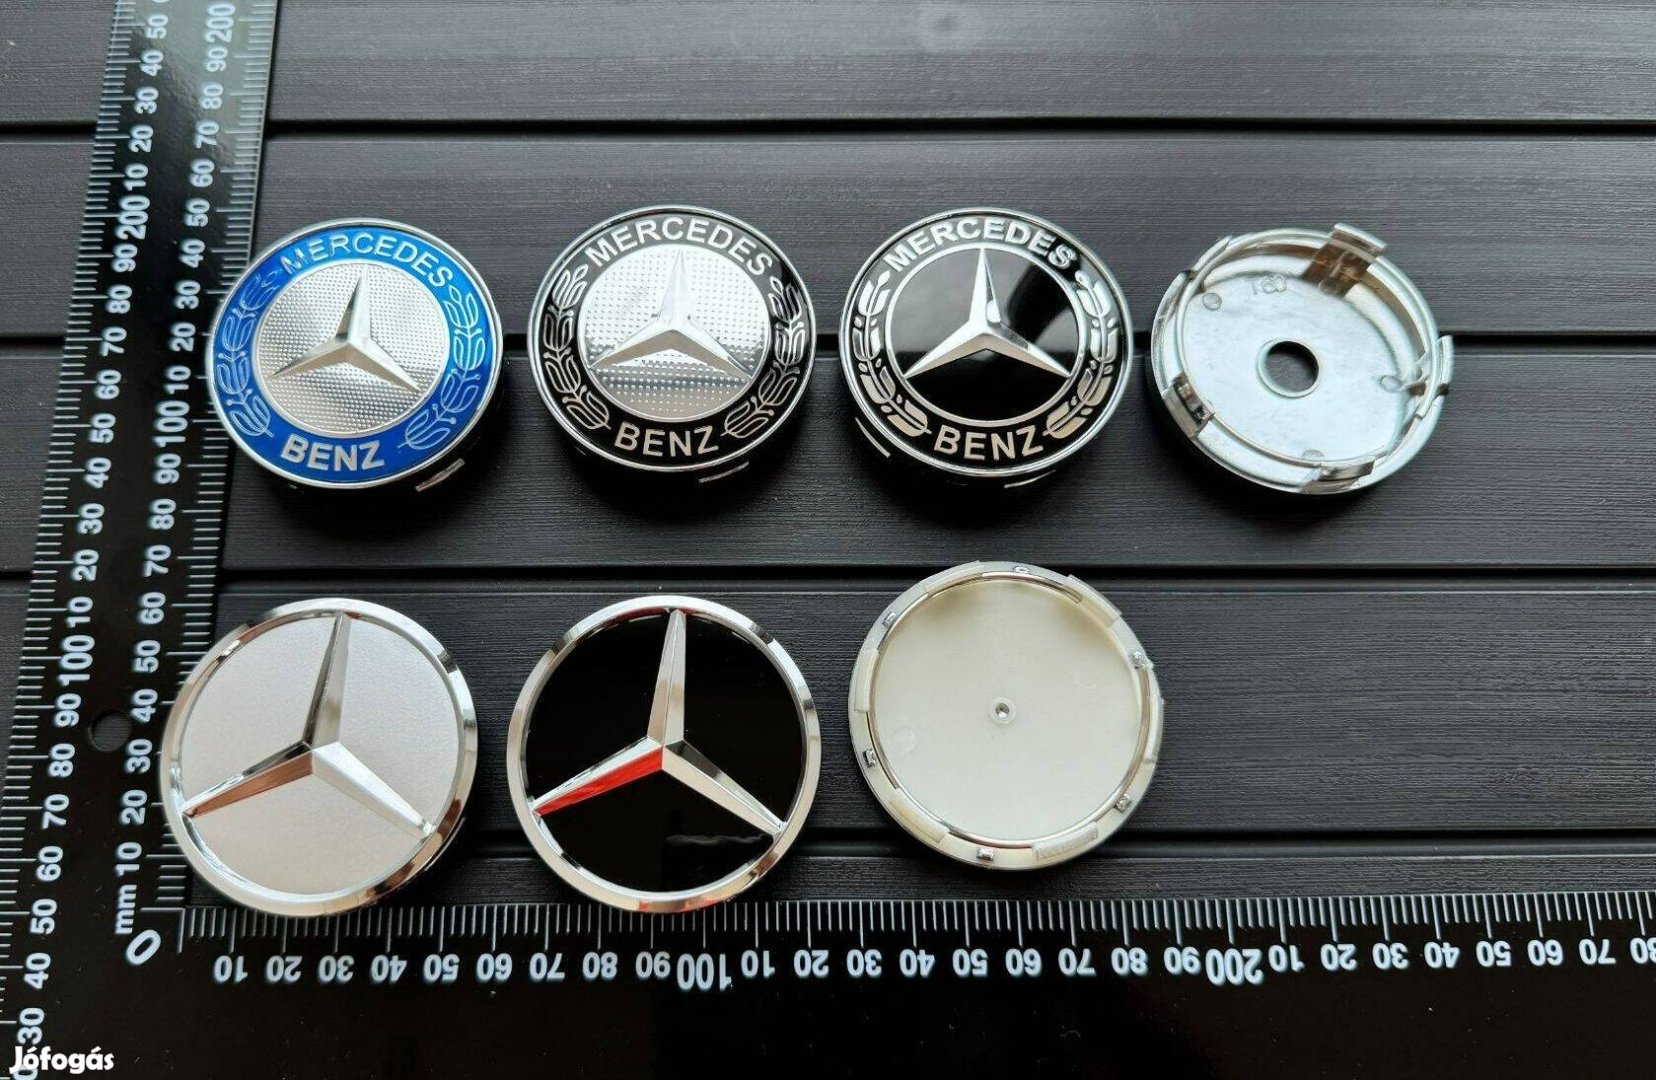 Új Mercedes 60mm felni alufelni kupak közép felnikupak sapka embléma